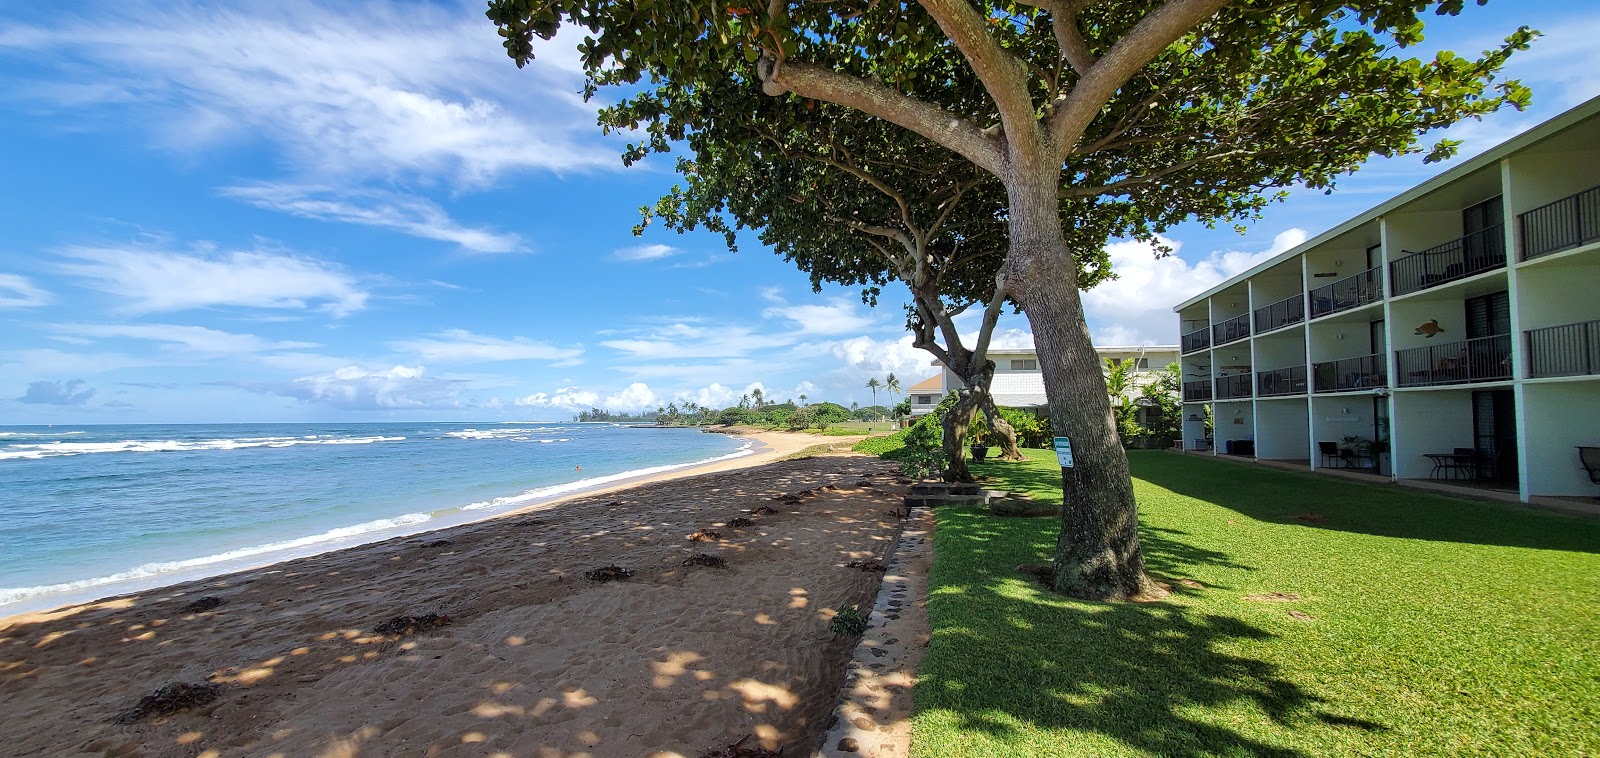 Foto de Hale'iwa Beach - lugar popular entre os apreciadores de relaxamento